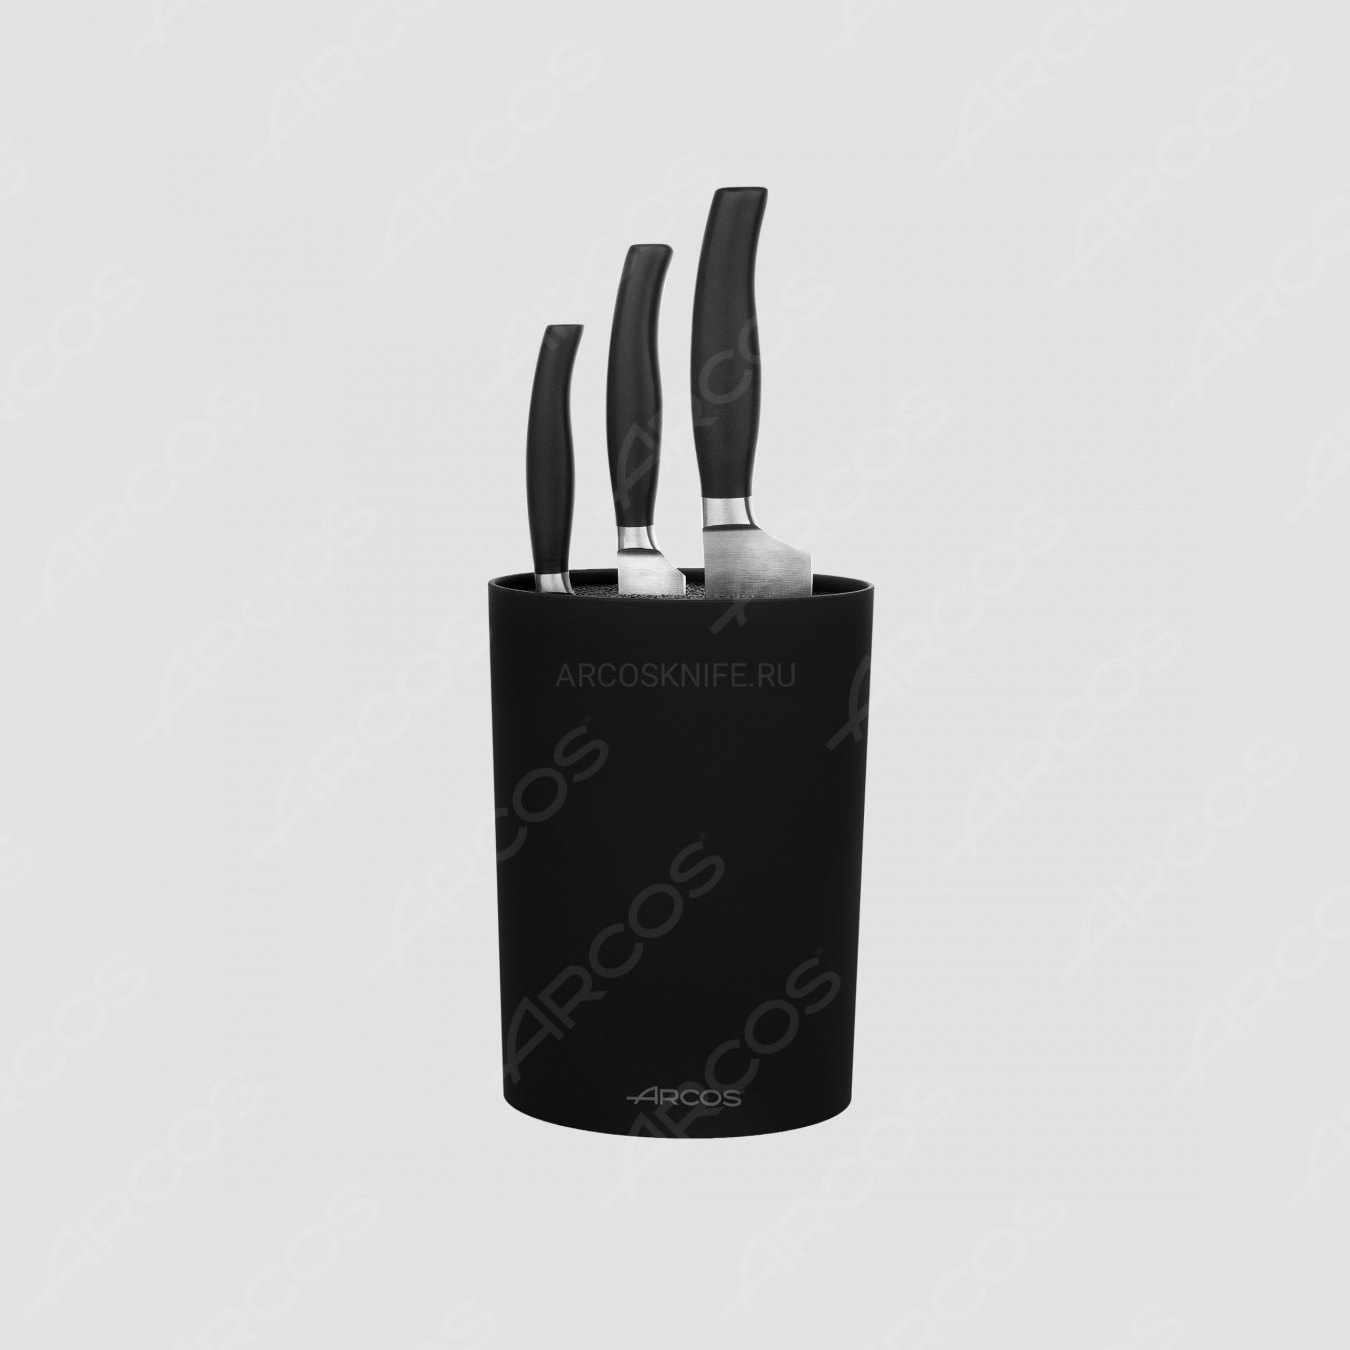 Набор из 3-х ножей с черной подставкой, серия Clara, ARCOS, Испания